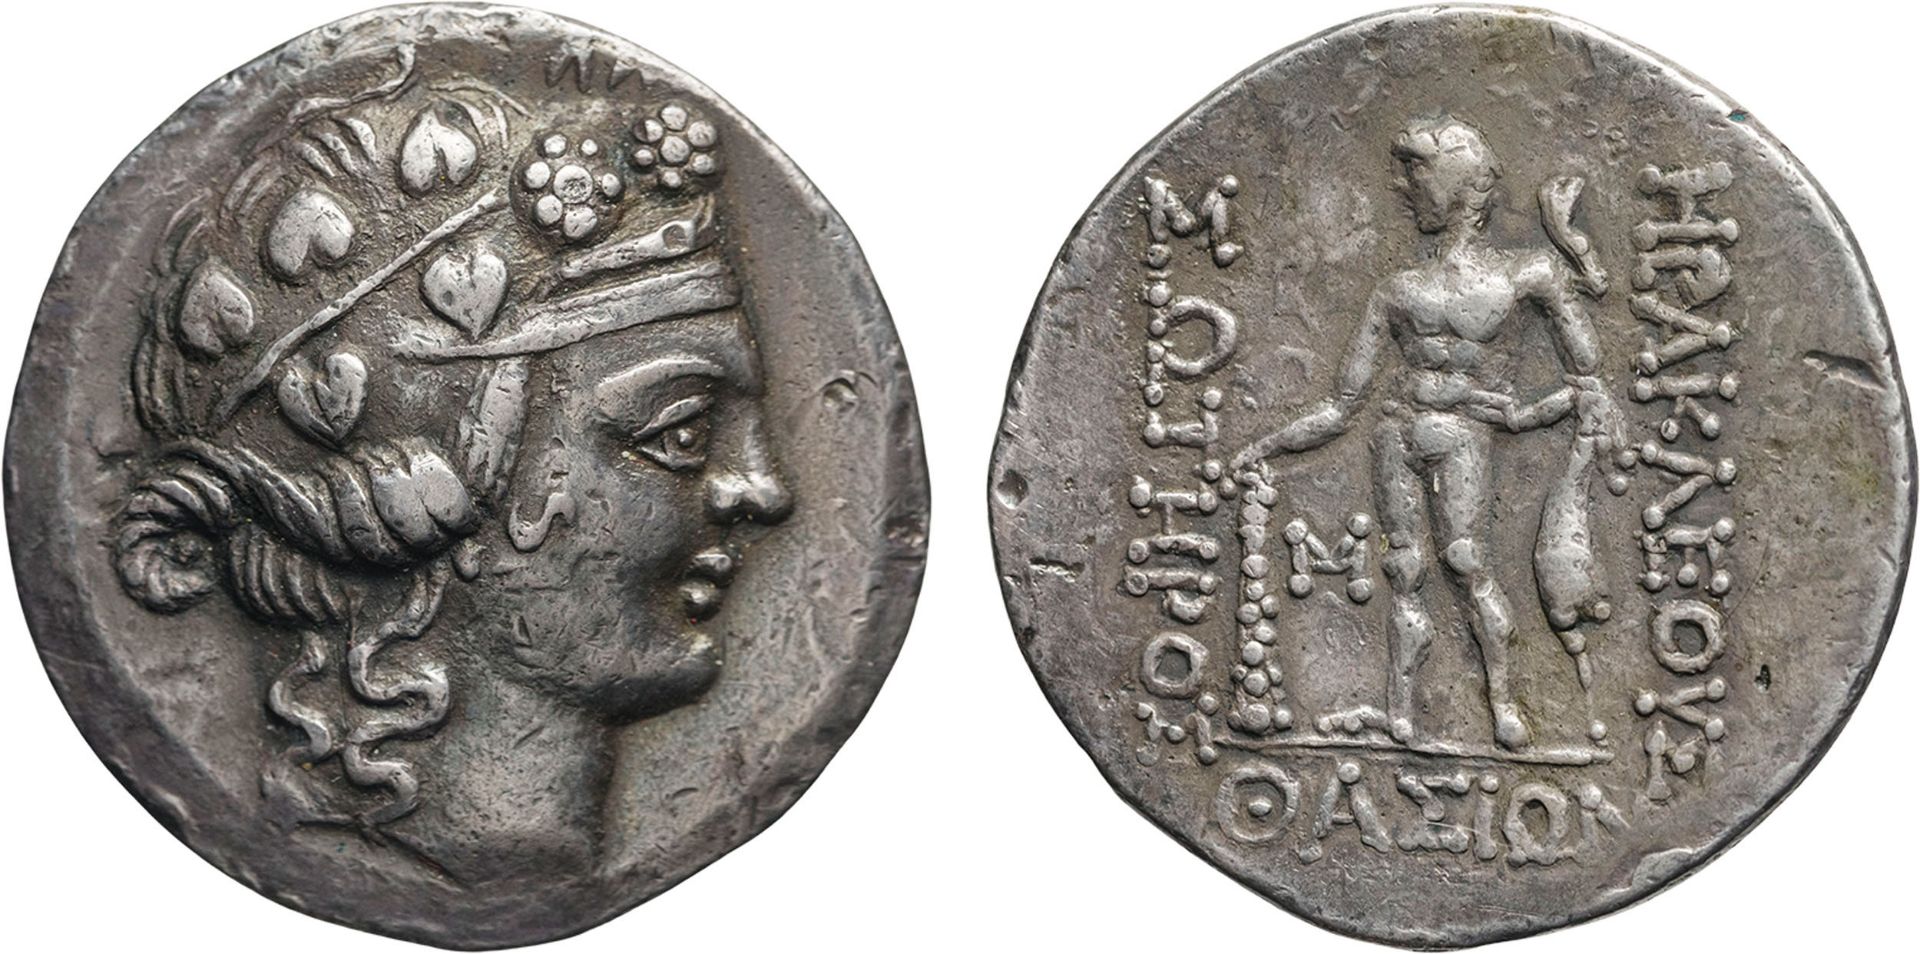 MONETE GRECHE. ISOLE DI TRACIA. THASOS (POST 146 A.C.). TETRADRACMA